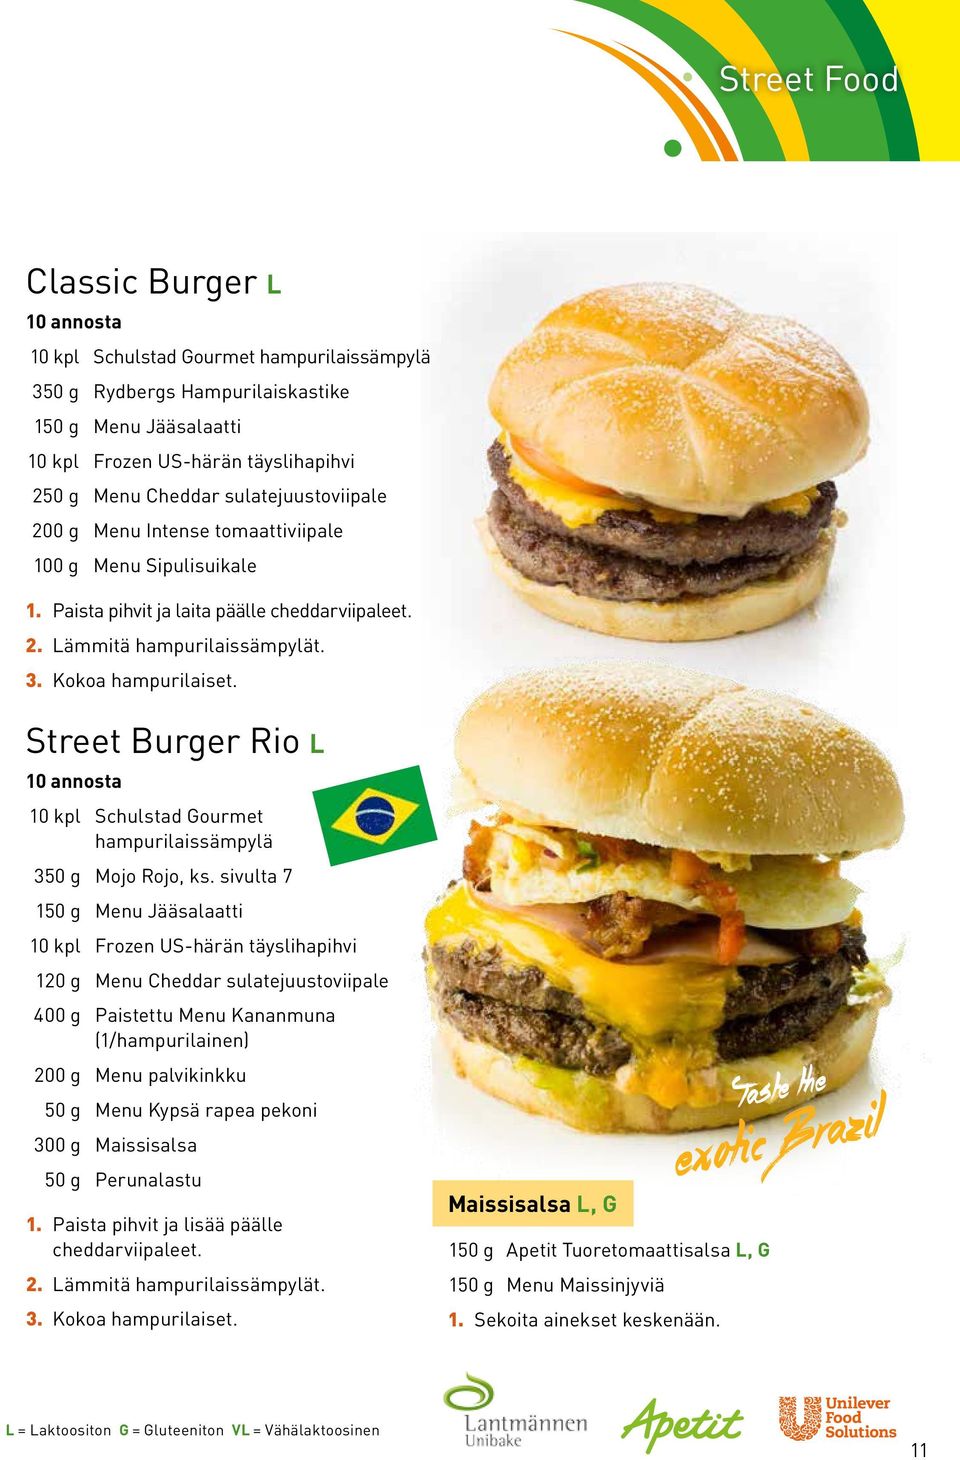 Street Burger Rio L 10 kpl Schulstad Gourmet hampurilaissämpylä 350 g Mojo Rojo, ks.